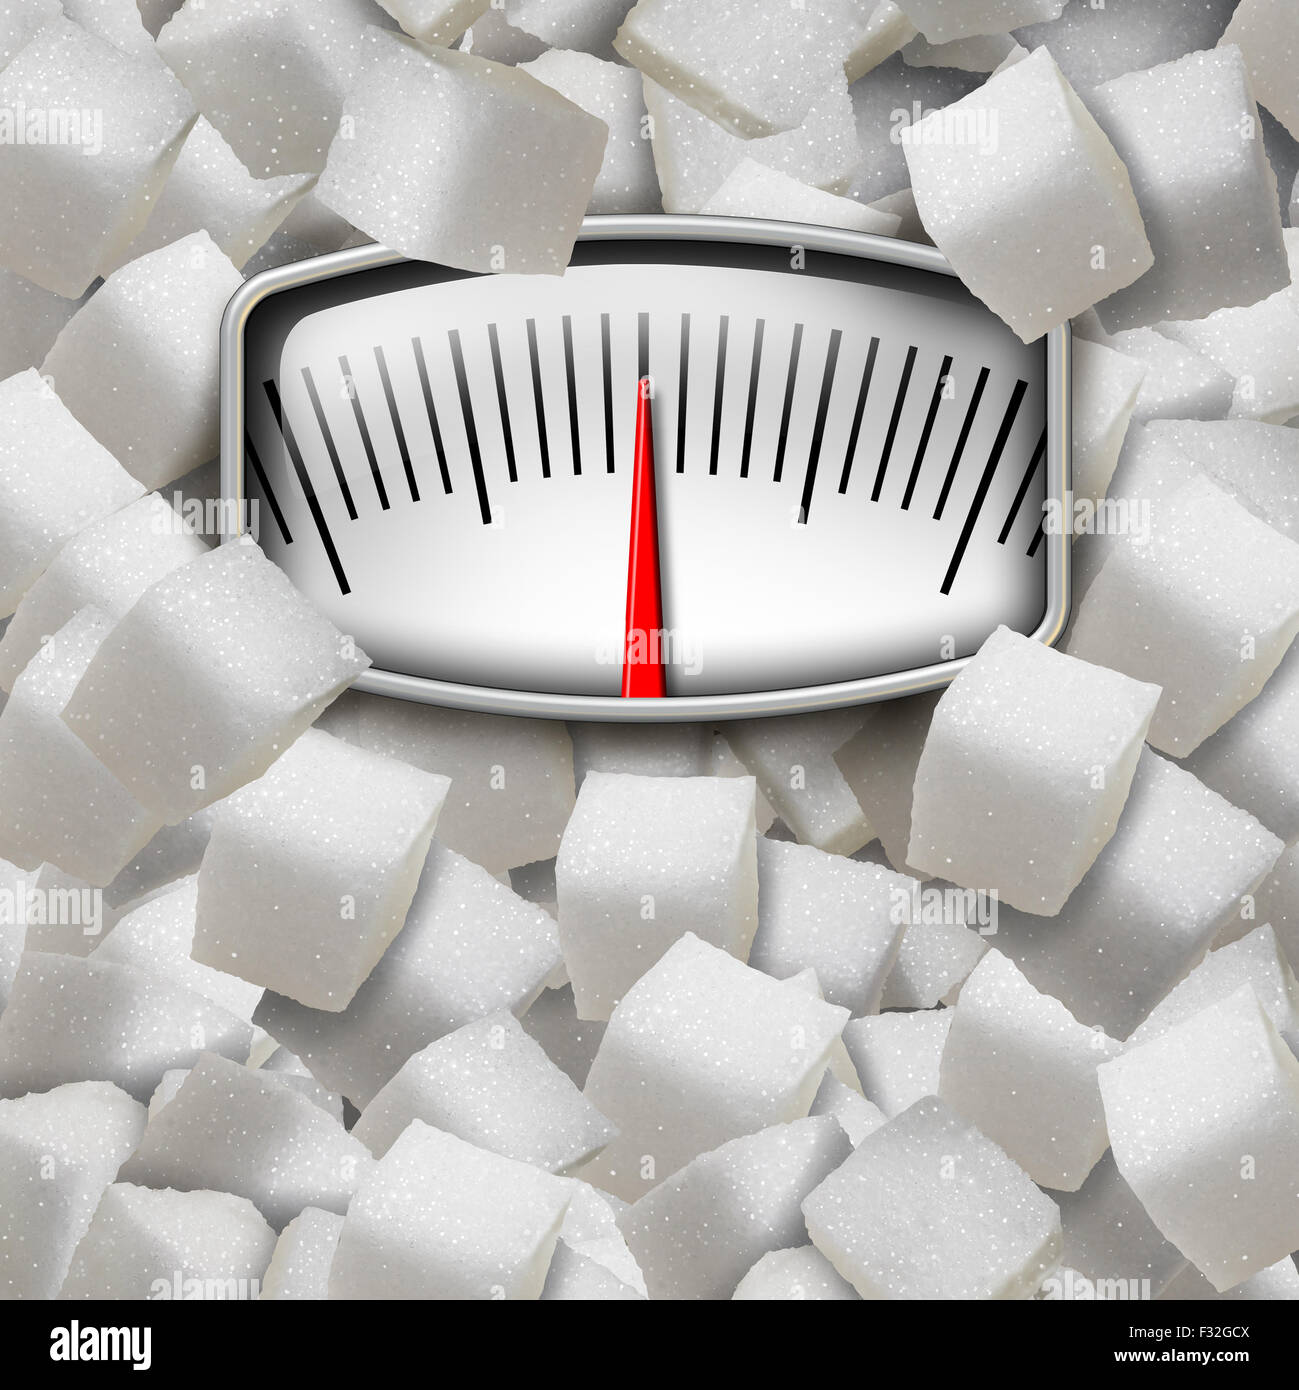 Mangiare il concetto di zucchero come un peso scala fatta dal raffinato cubetti zuccherini come una dieta per il fitness e il simbolo di nutrizione per la salute i problemi di rischio di consumare troppa edulcorante nella dieta umana. Foto Stock